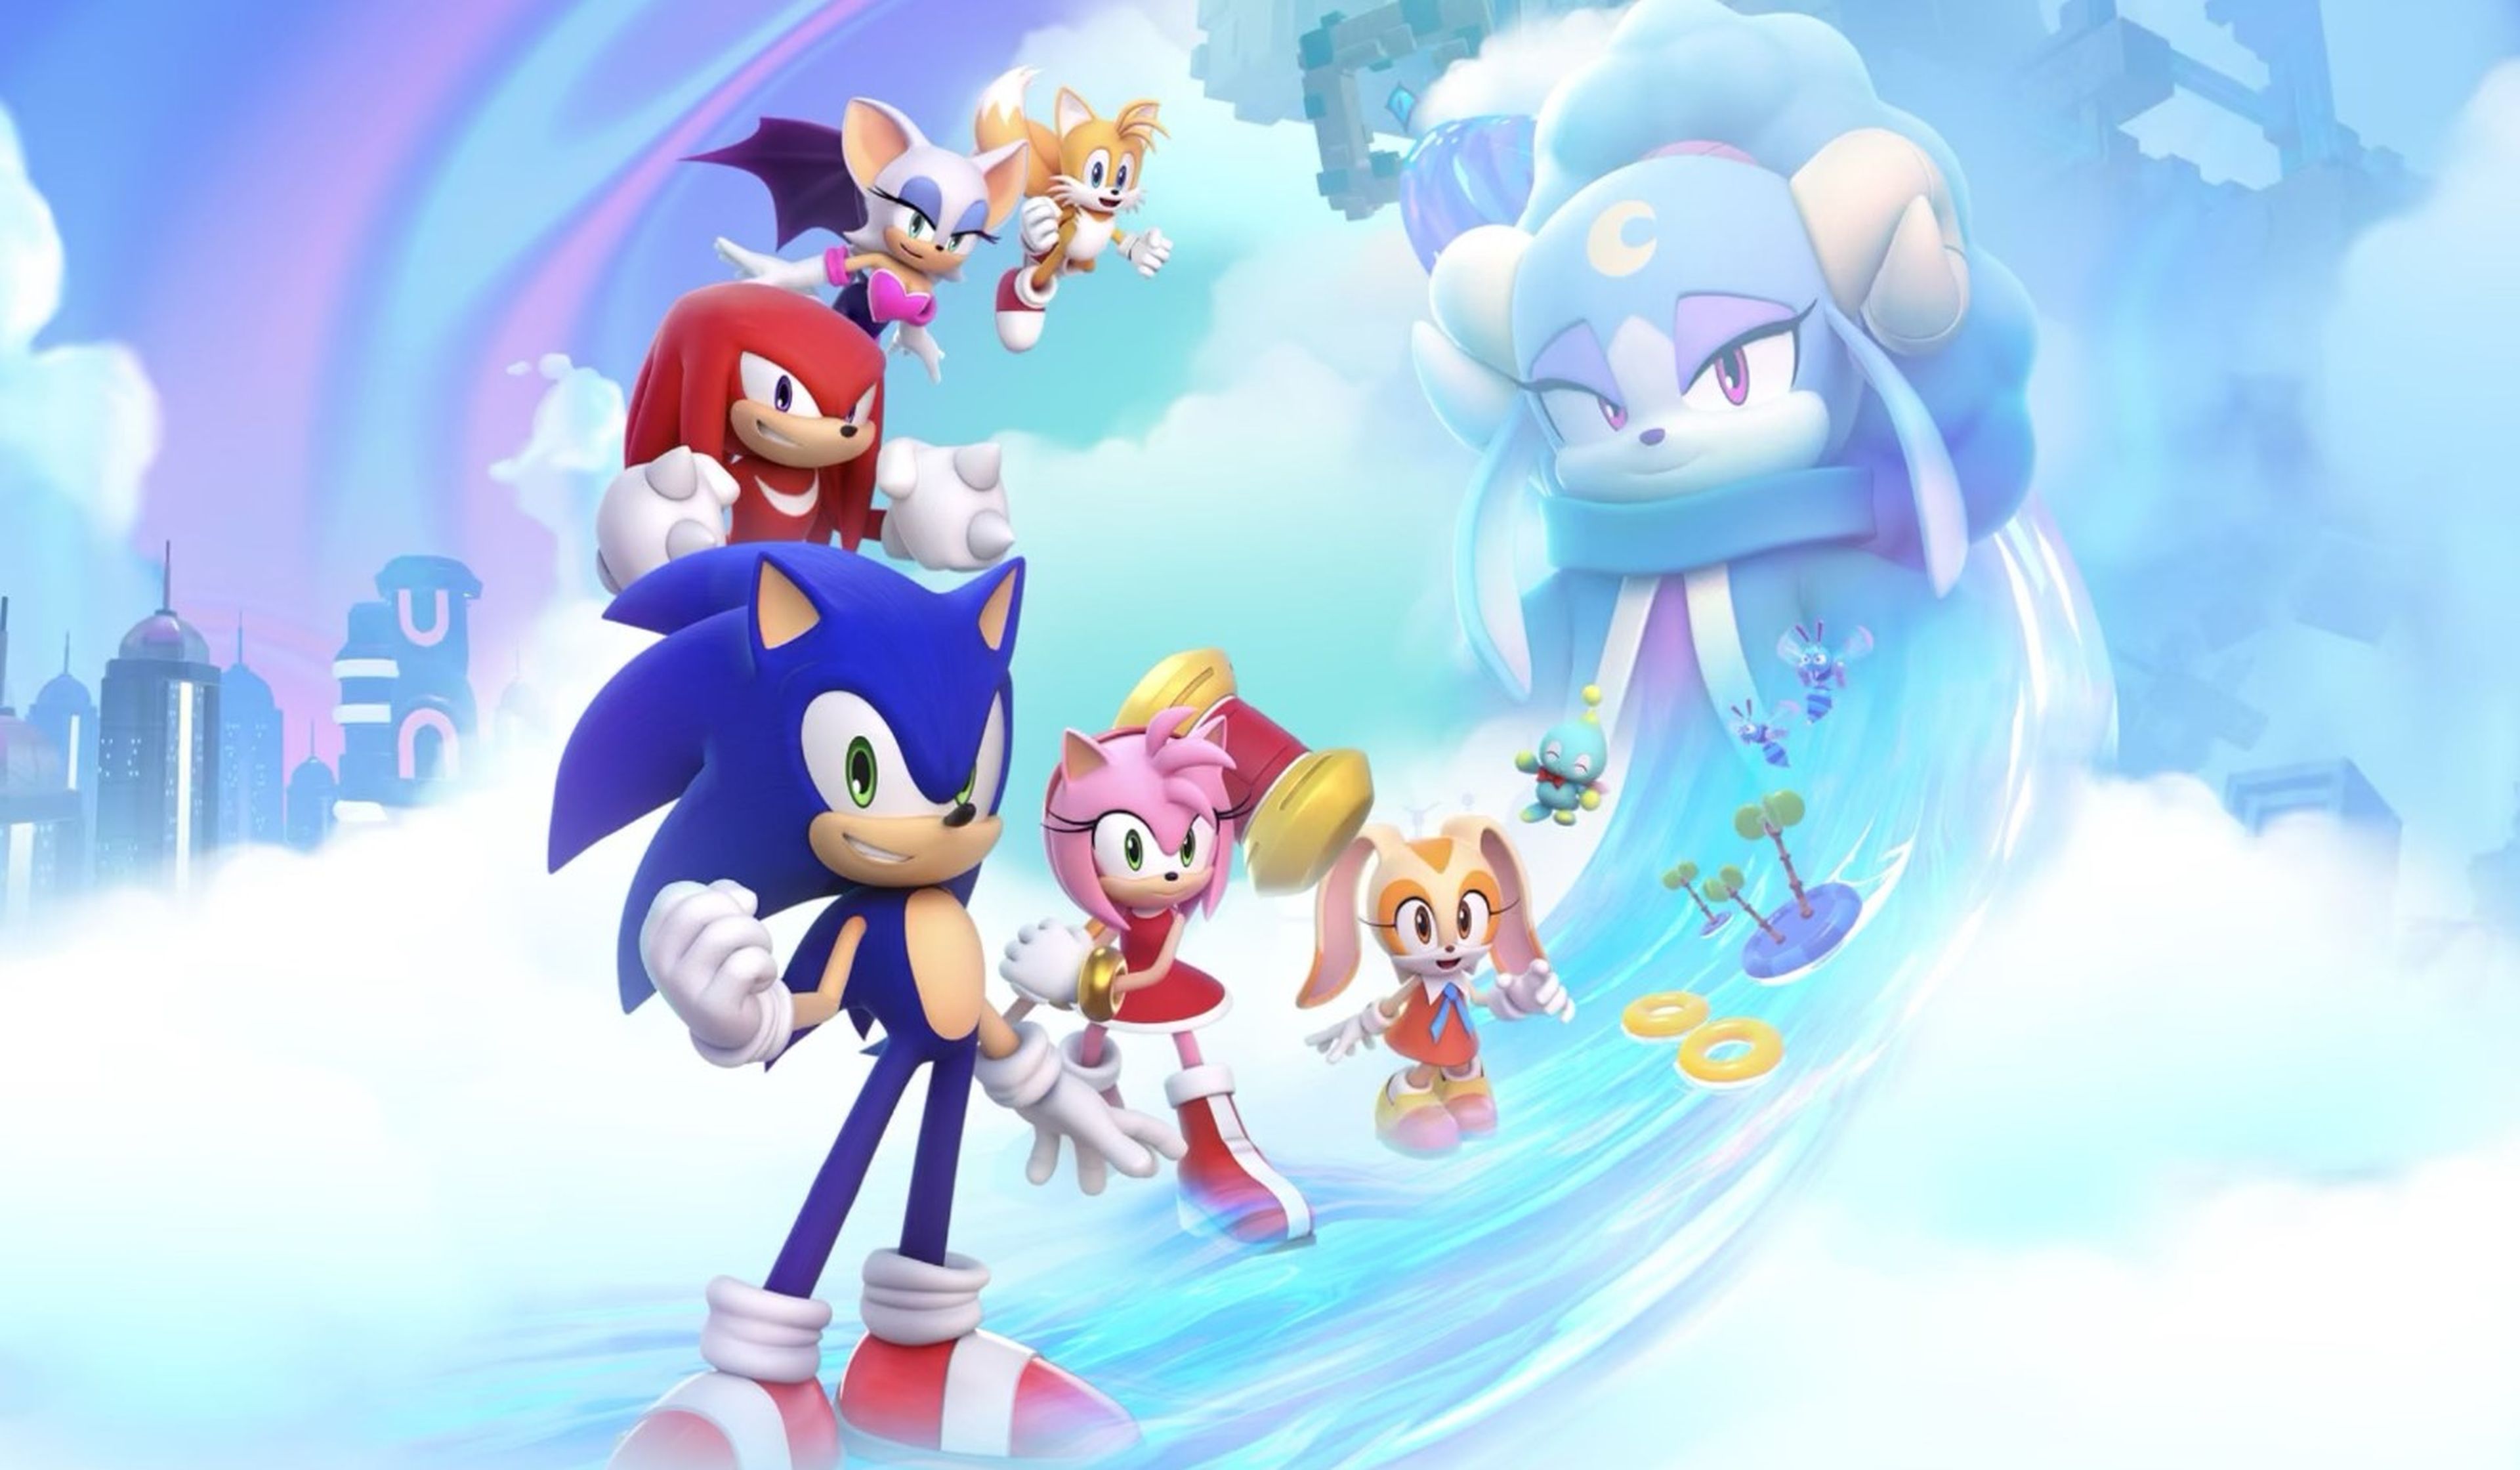 Sonic Dream Team